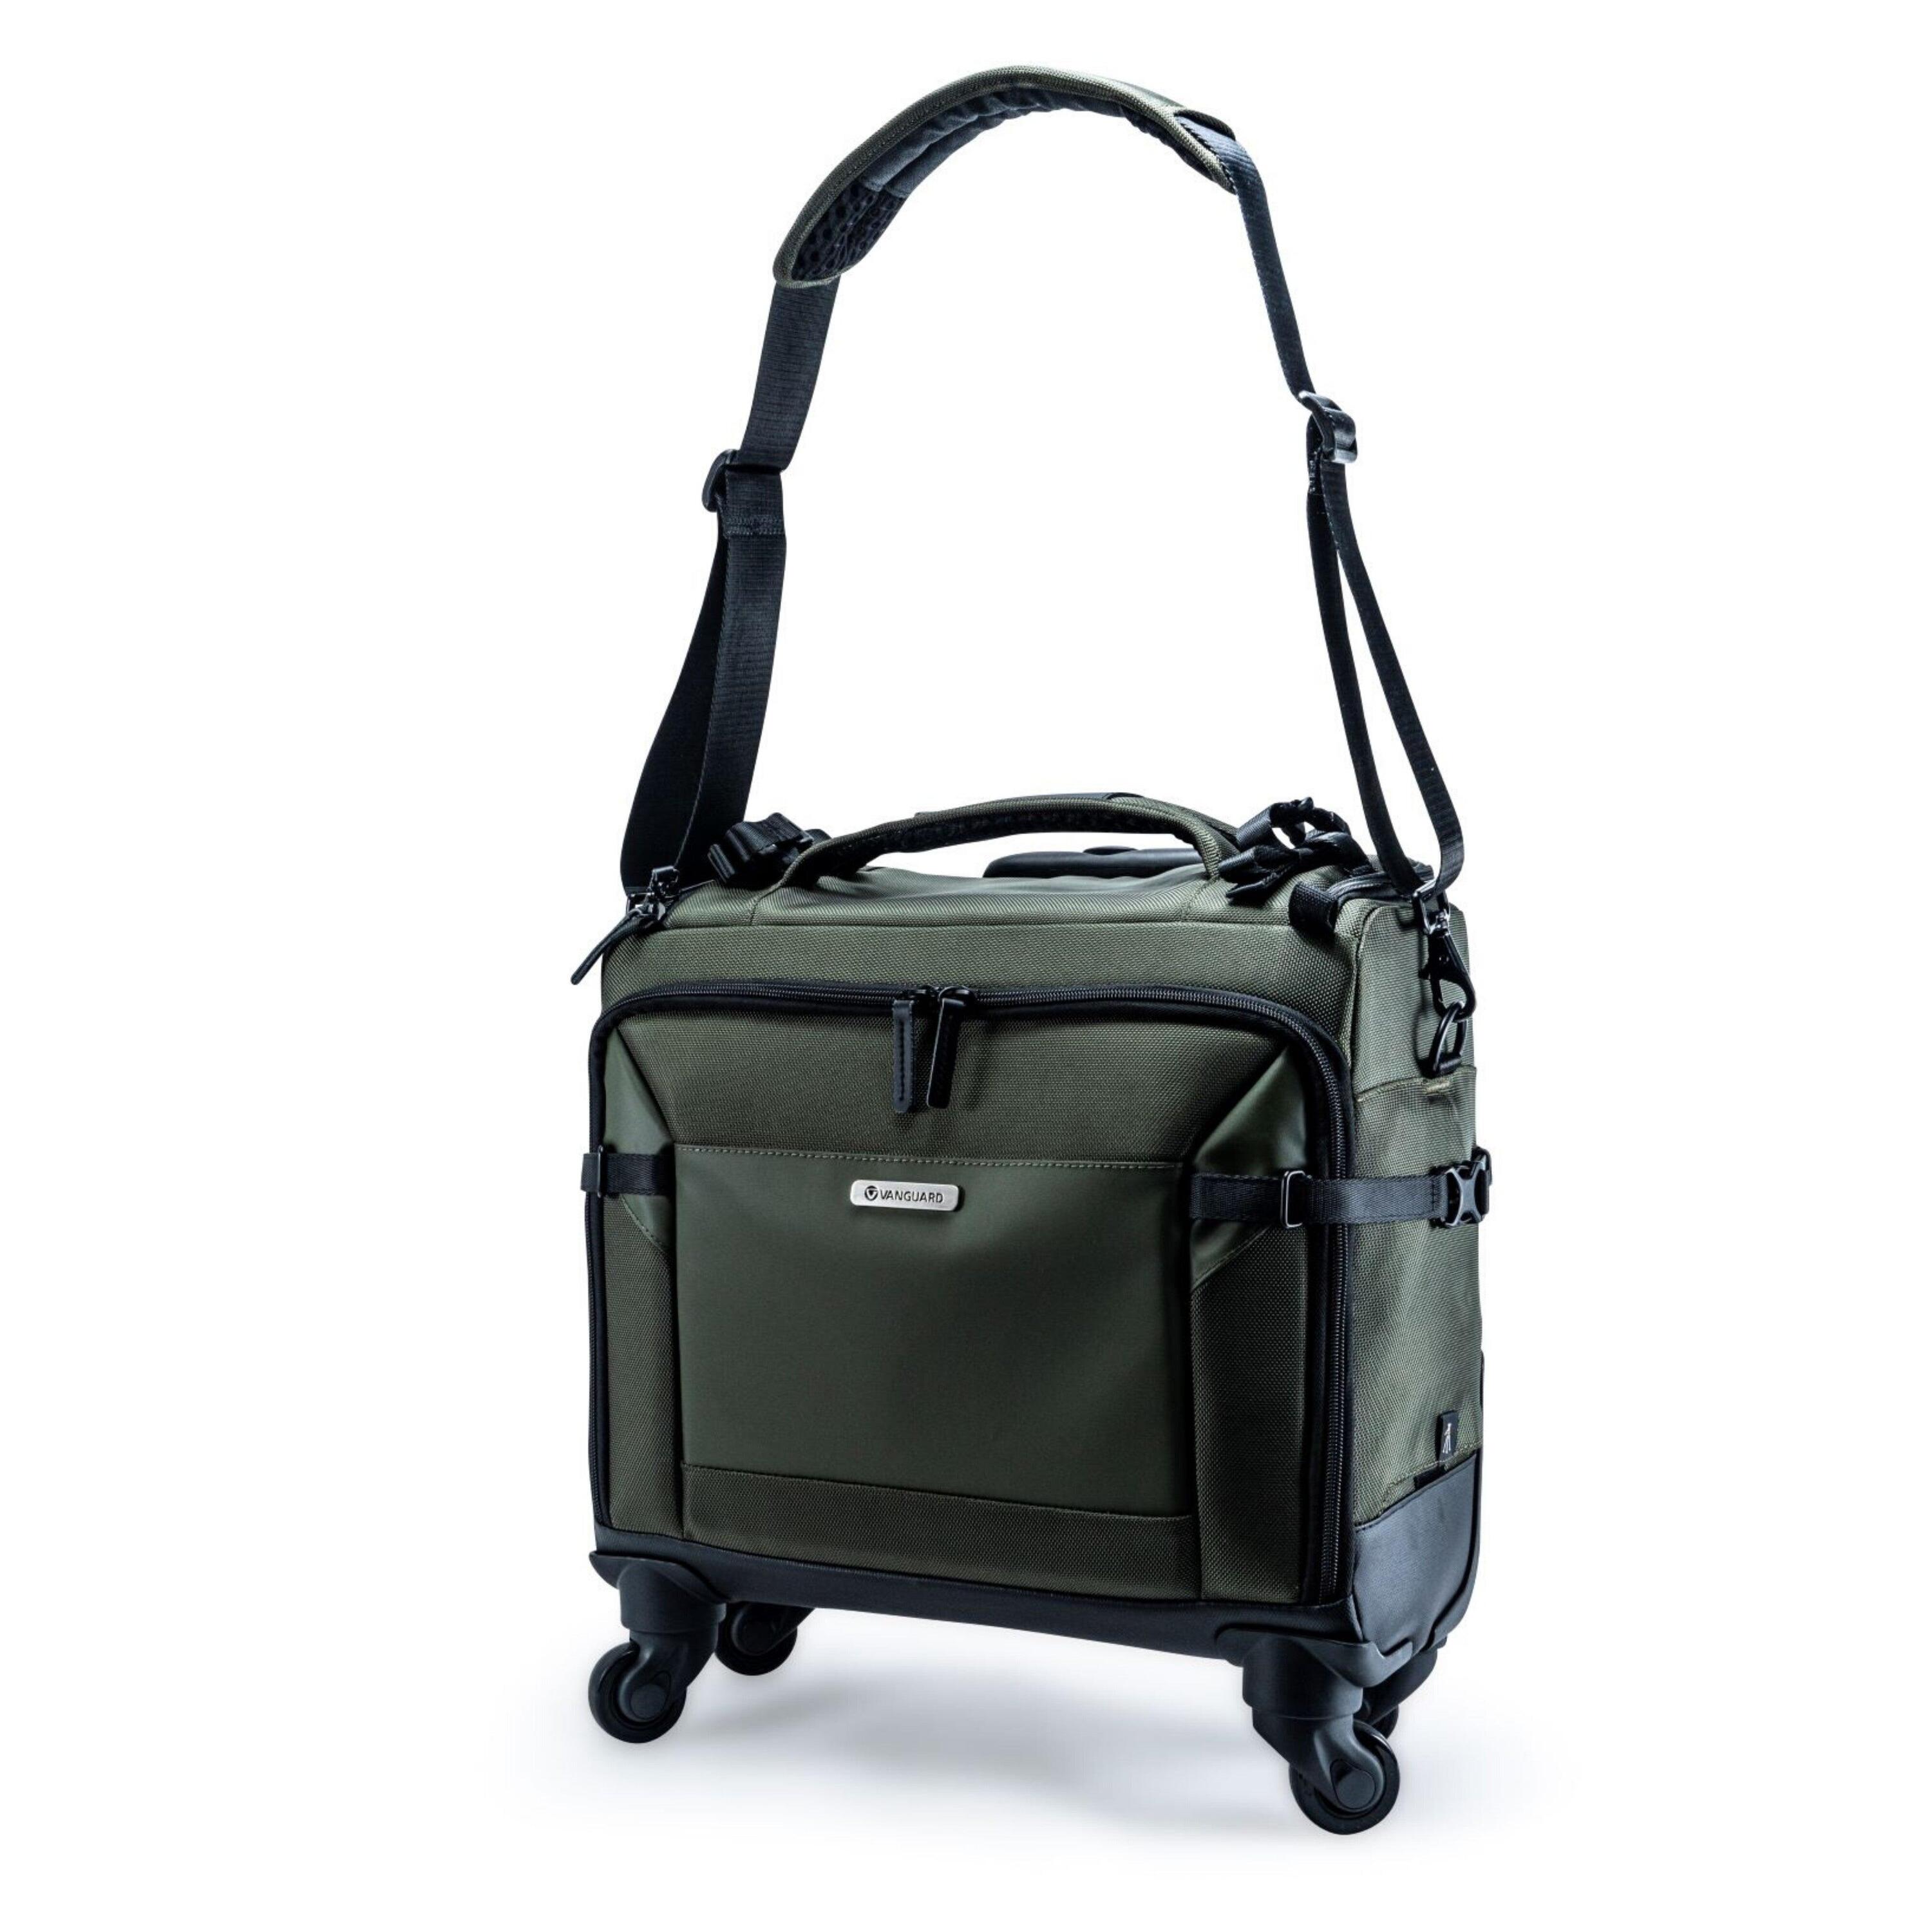 VEO Select 42T GR - Pilot Style Camera Roller/Shoulder Bag - Green 1/5